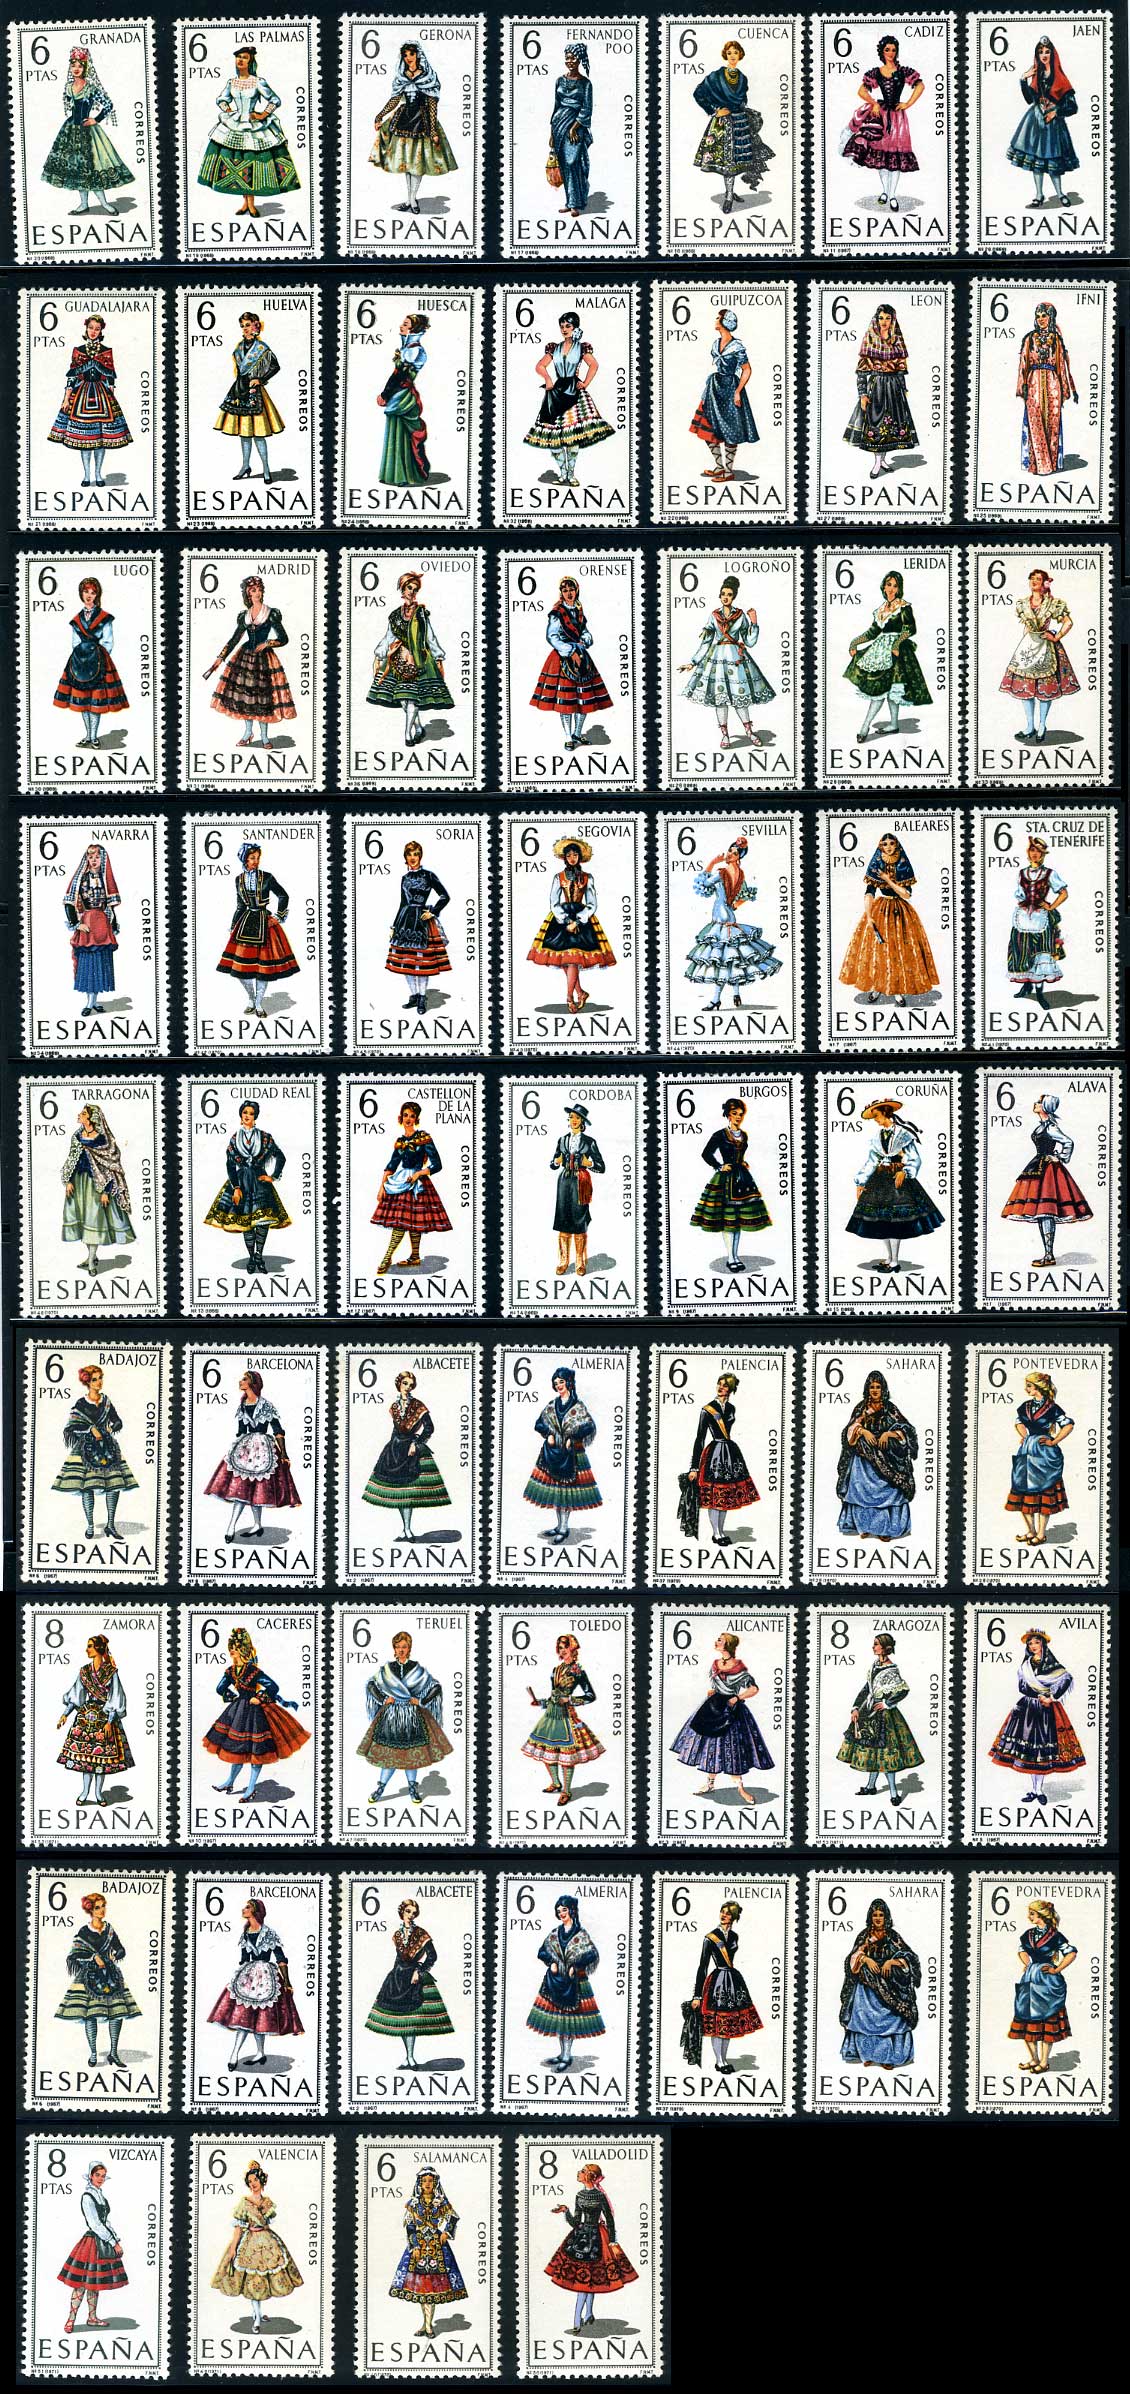 スペイン 民族衣装シリーズ53種 日本切手 外国切手の販売 趣味の切手専門店マルメイト